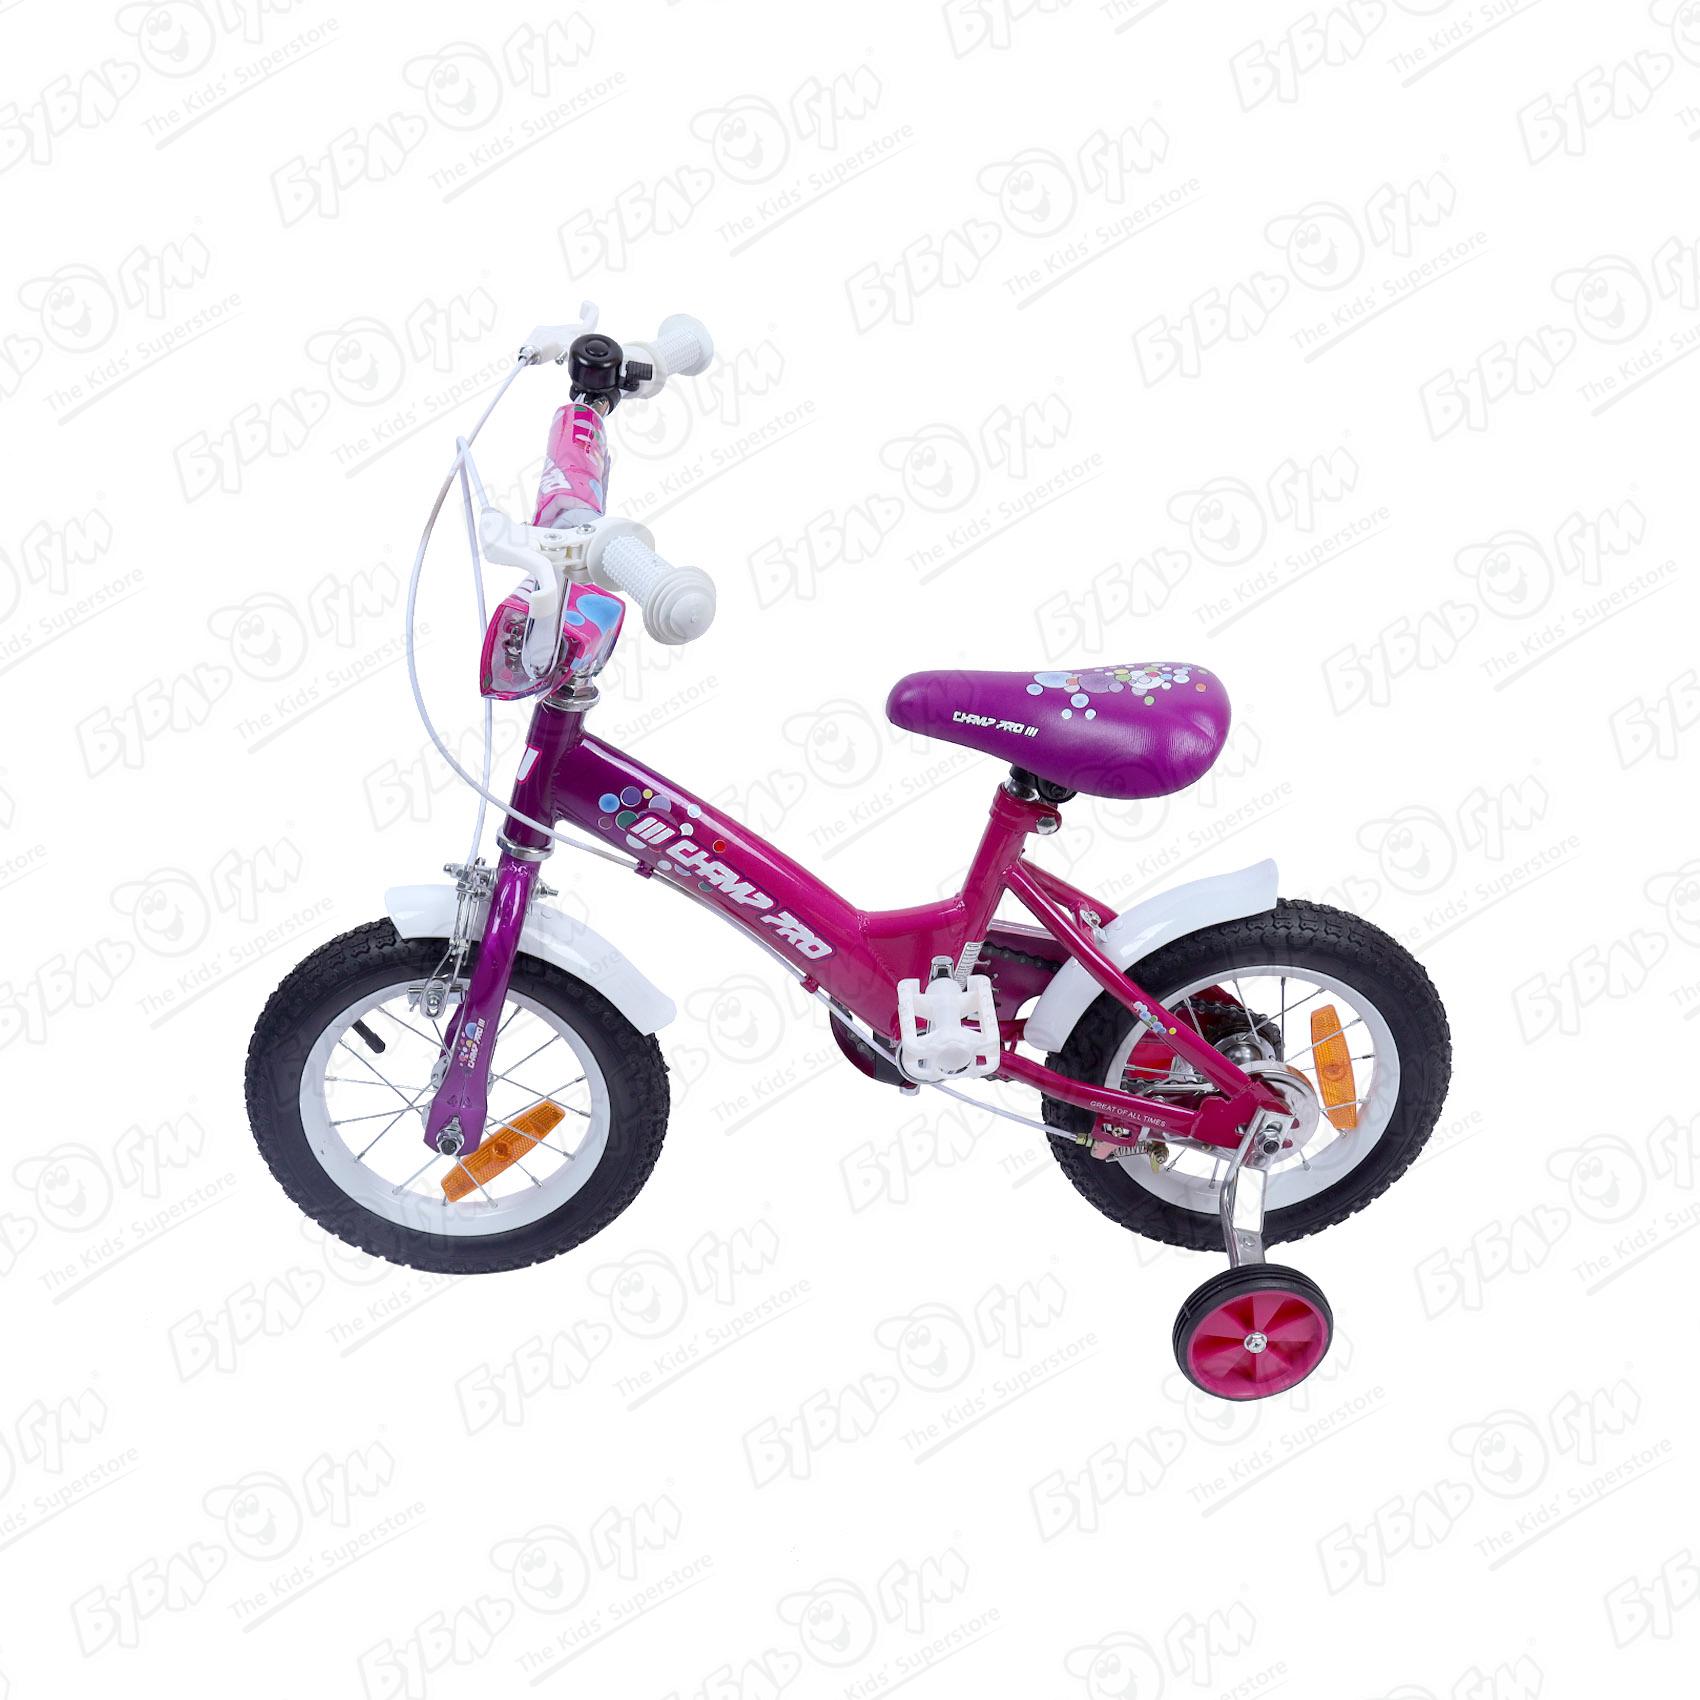 Велосипед Champ Pro G12 детский четырехколесный розовый - фото 2